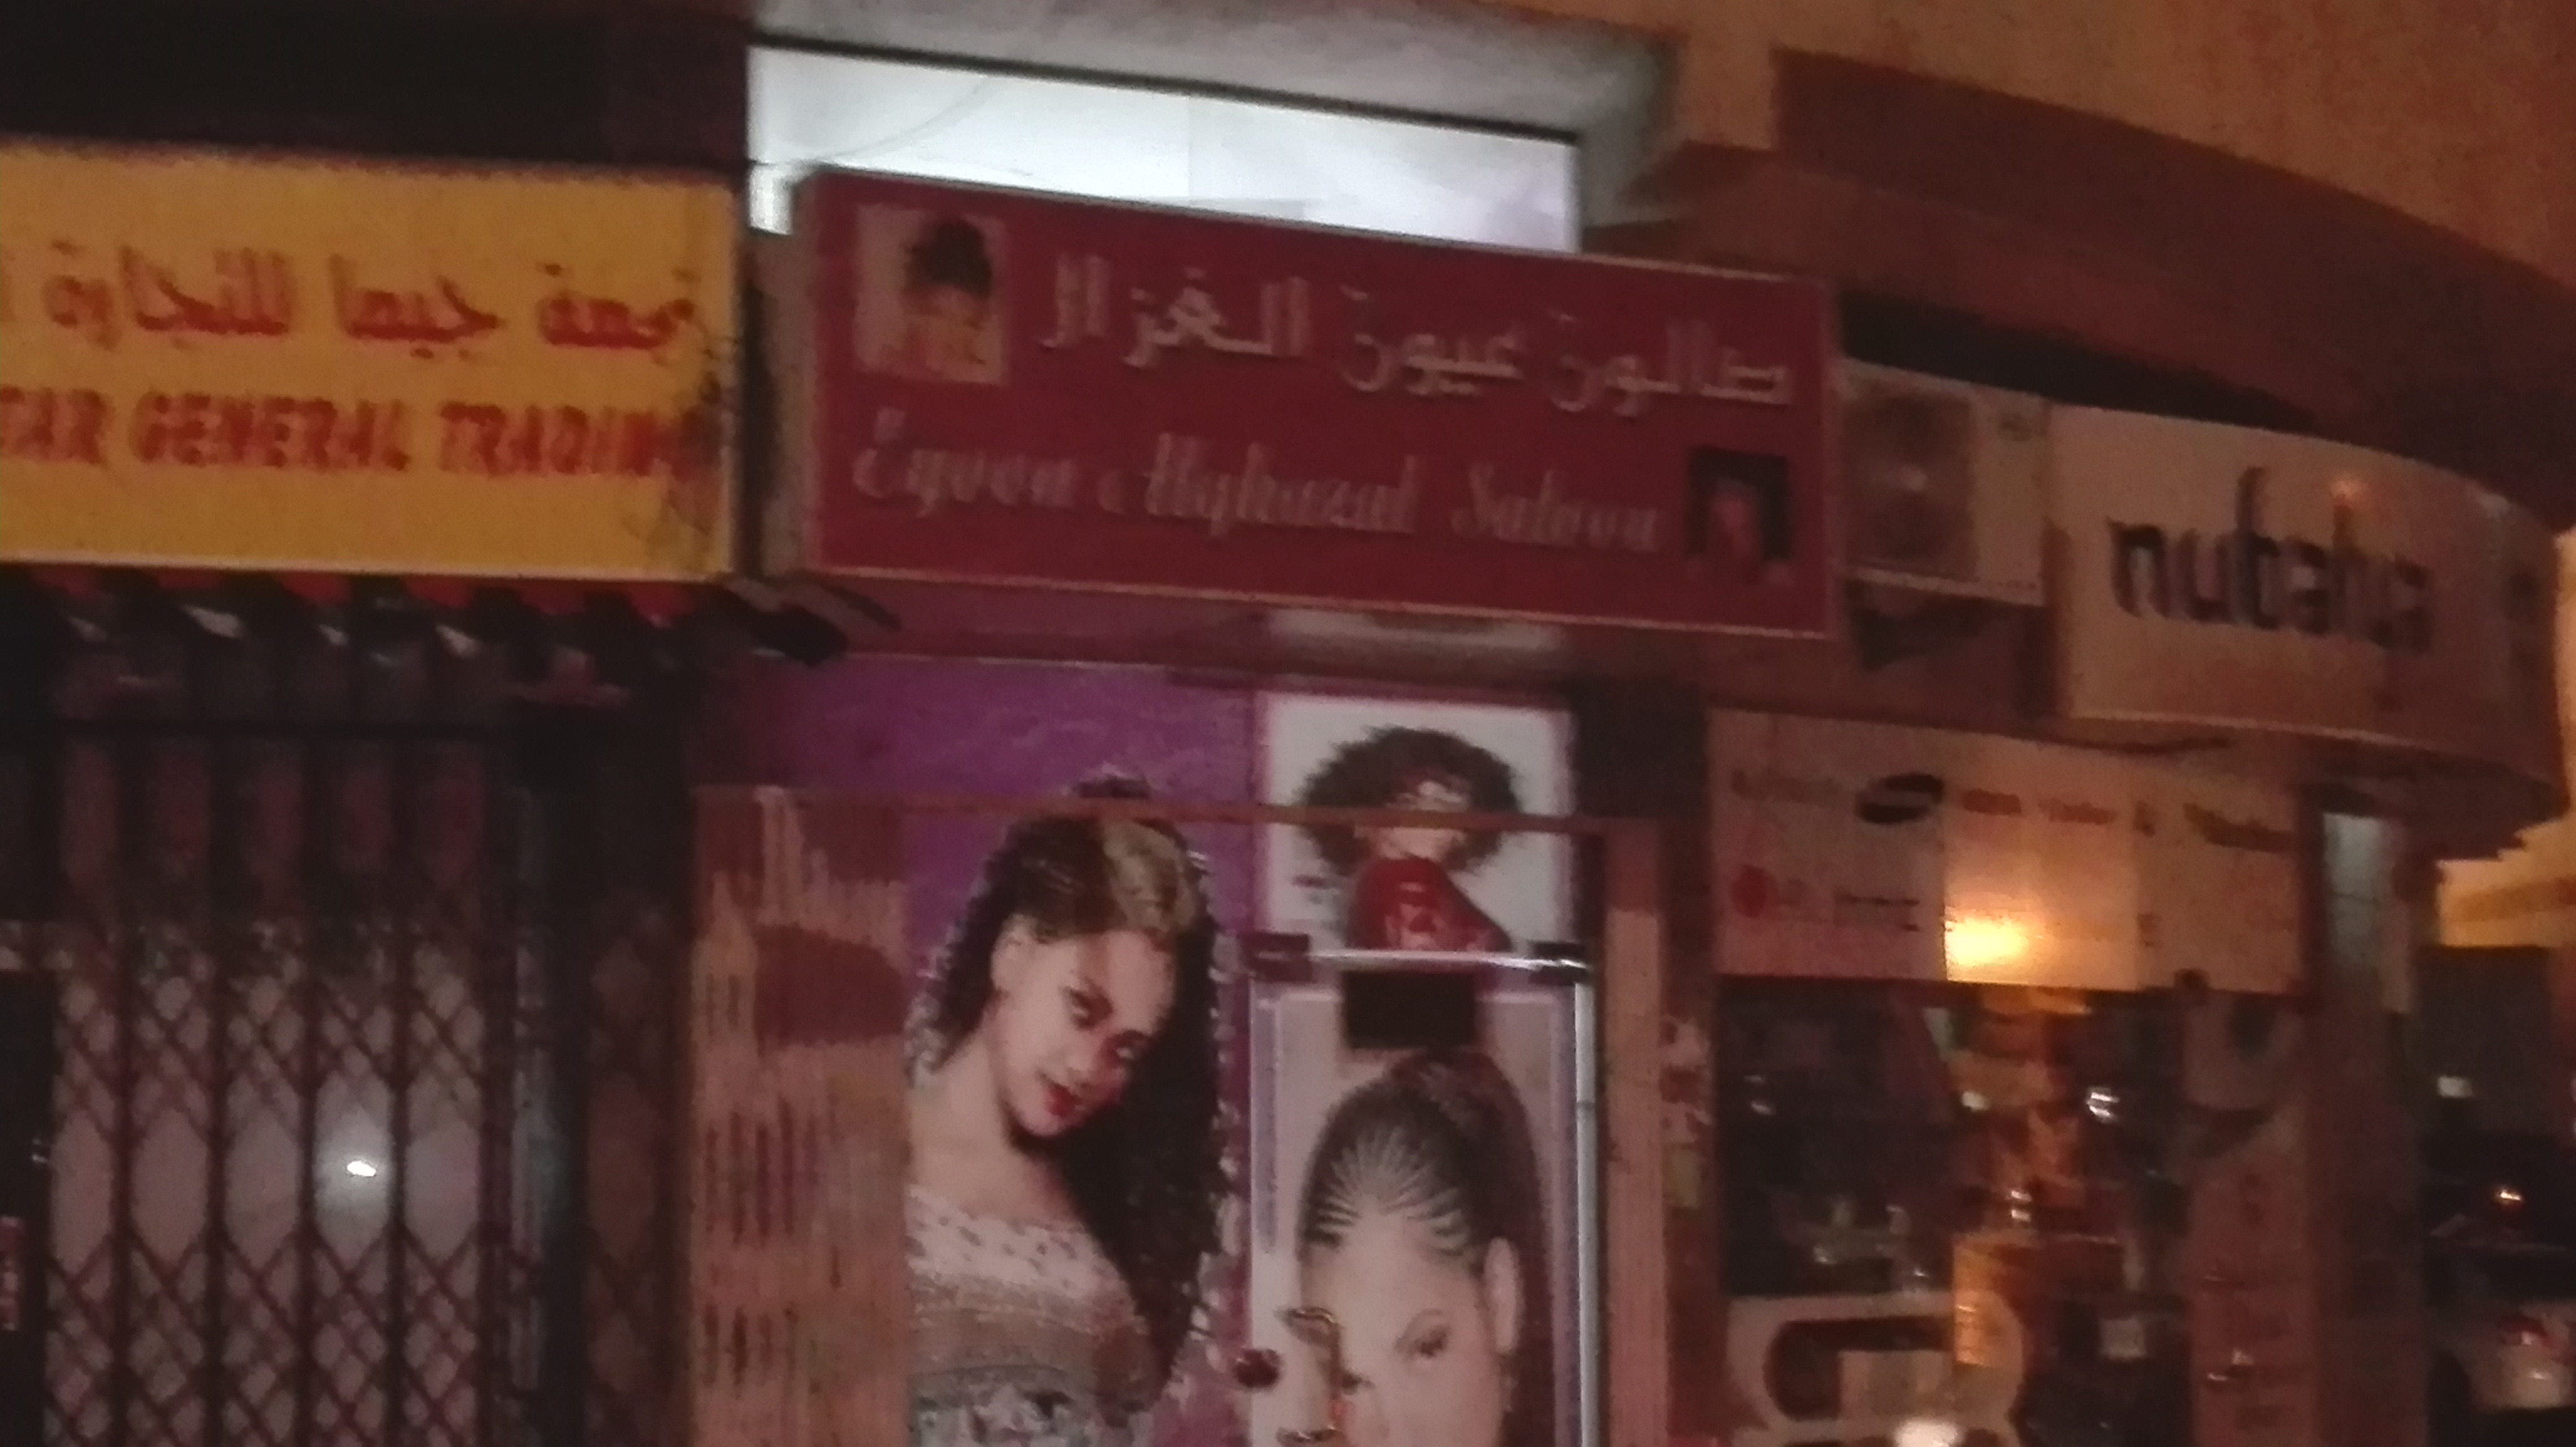 Eyoon Al Ghazal Ladies salon in Dubai